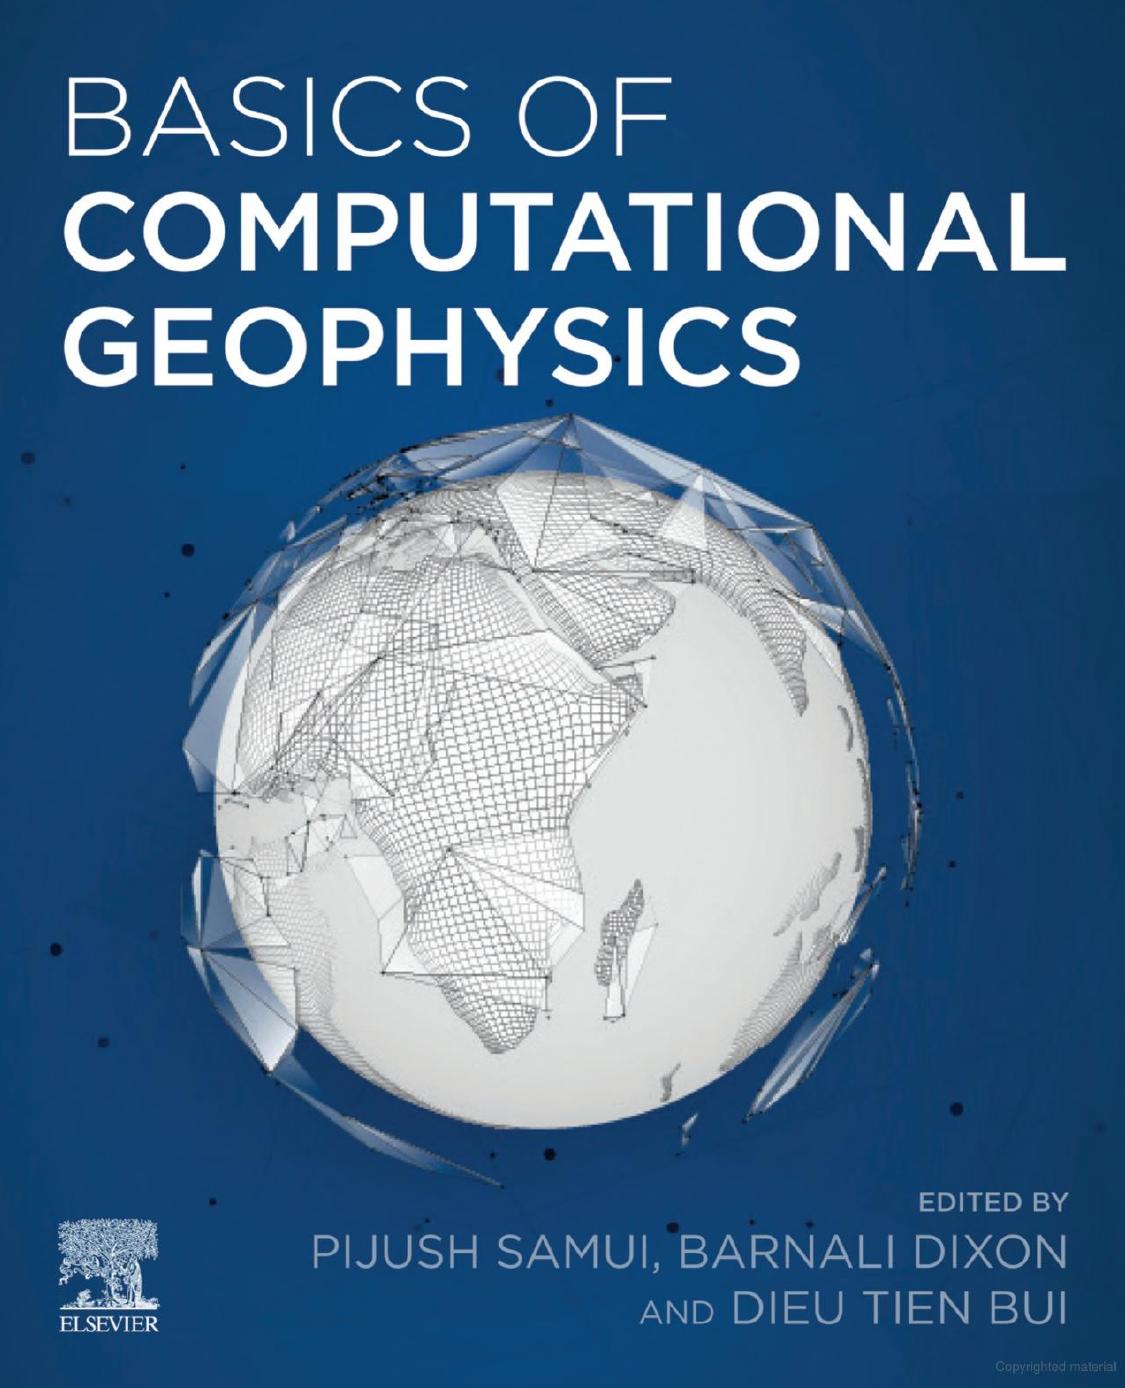 Basics of Computational Geophysics-Elsevier 2021